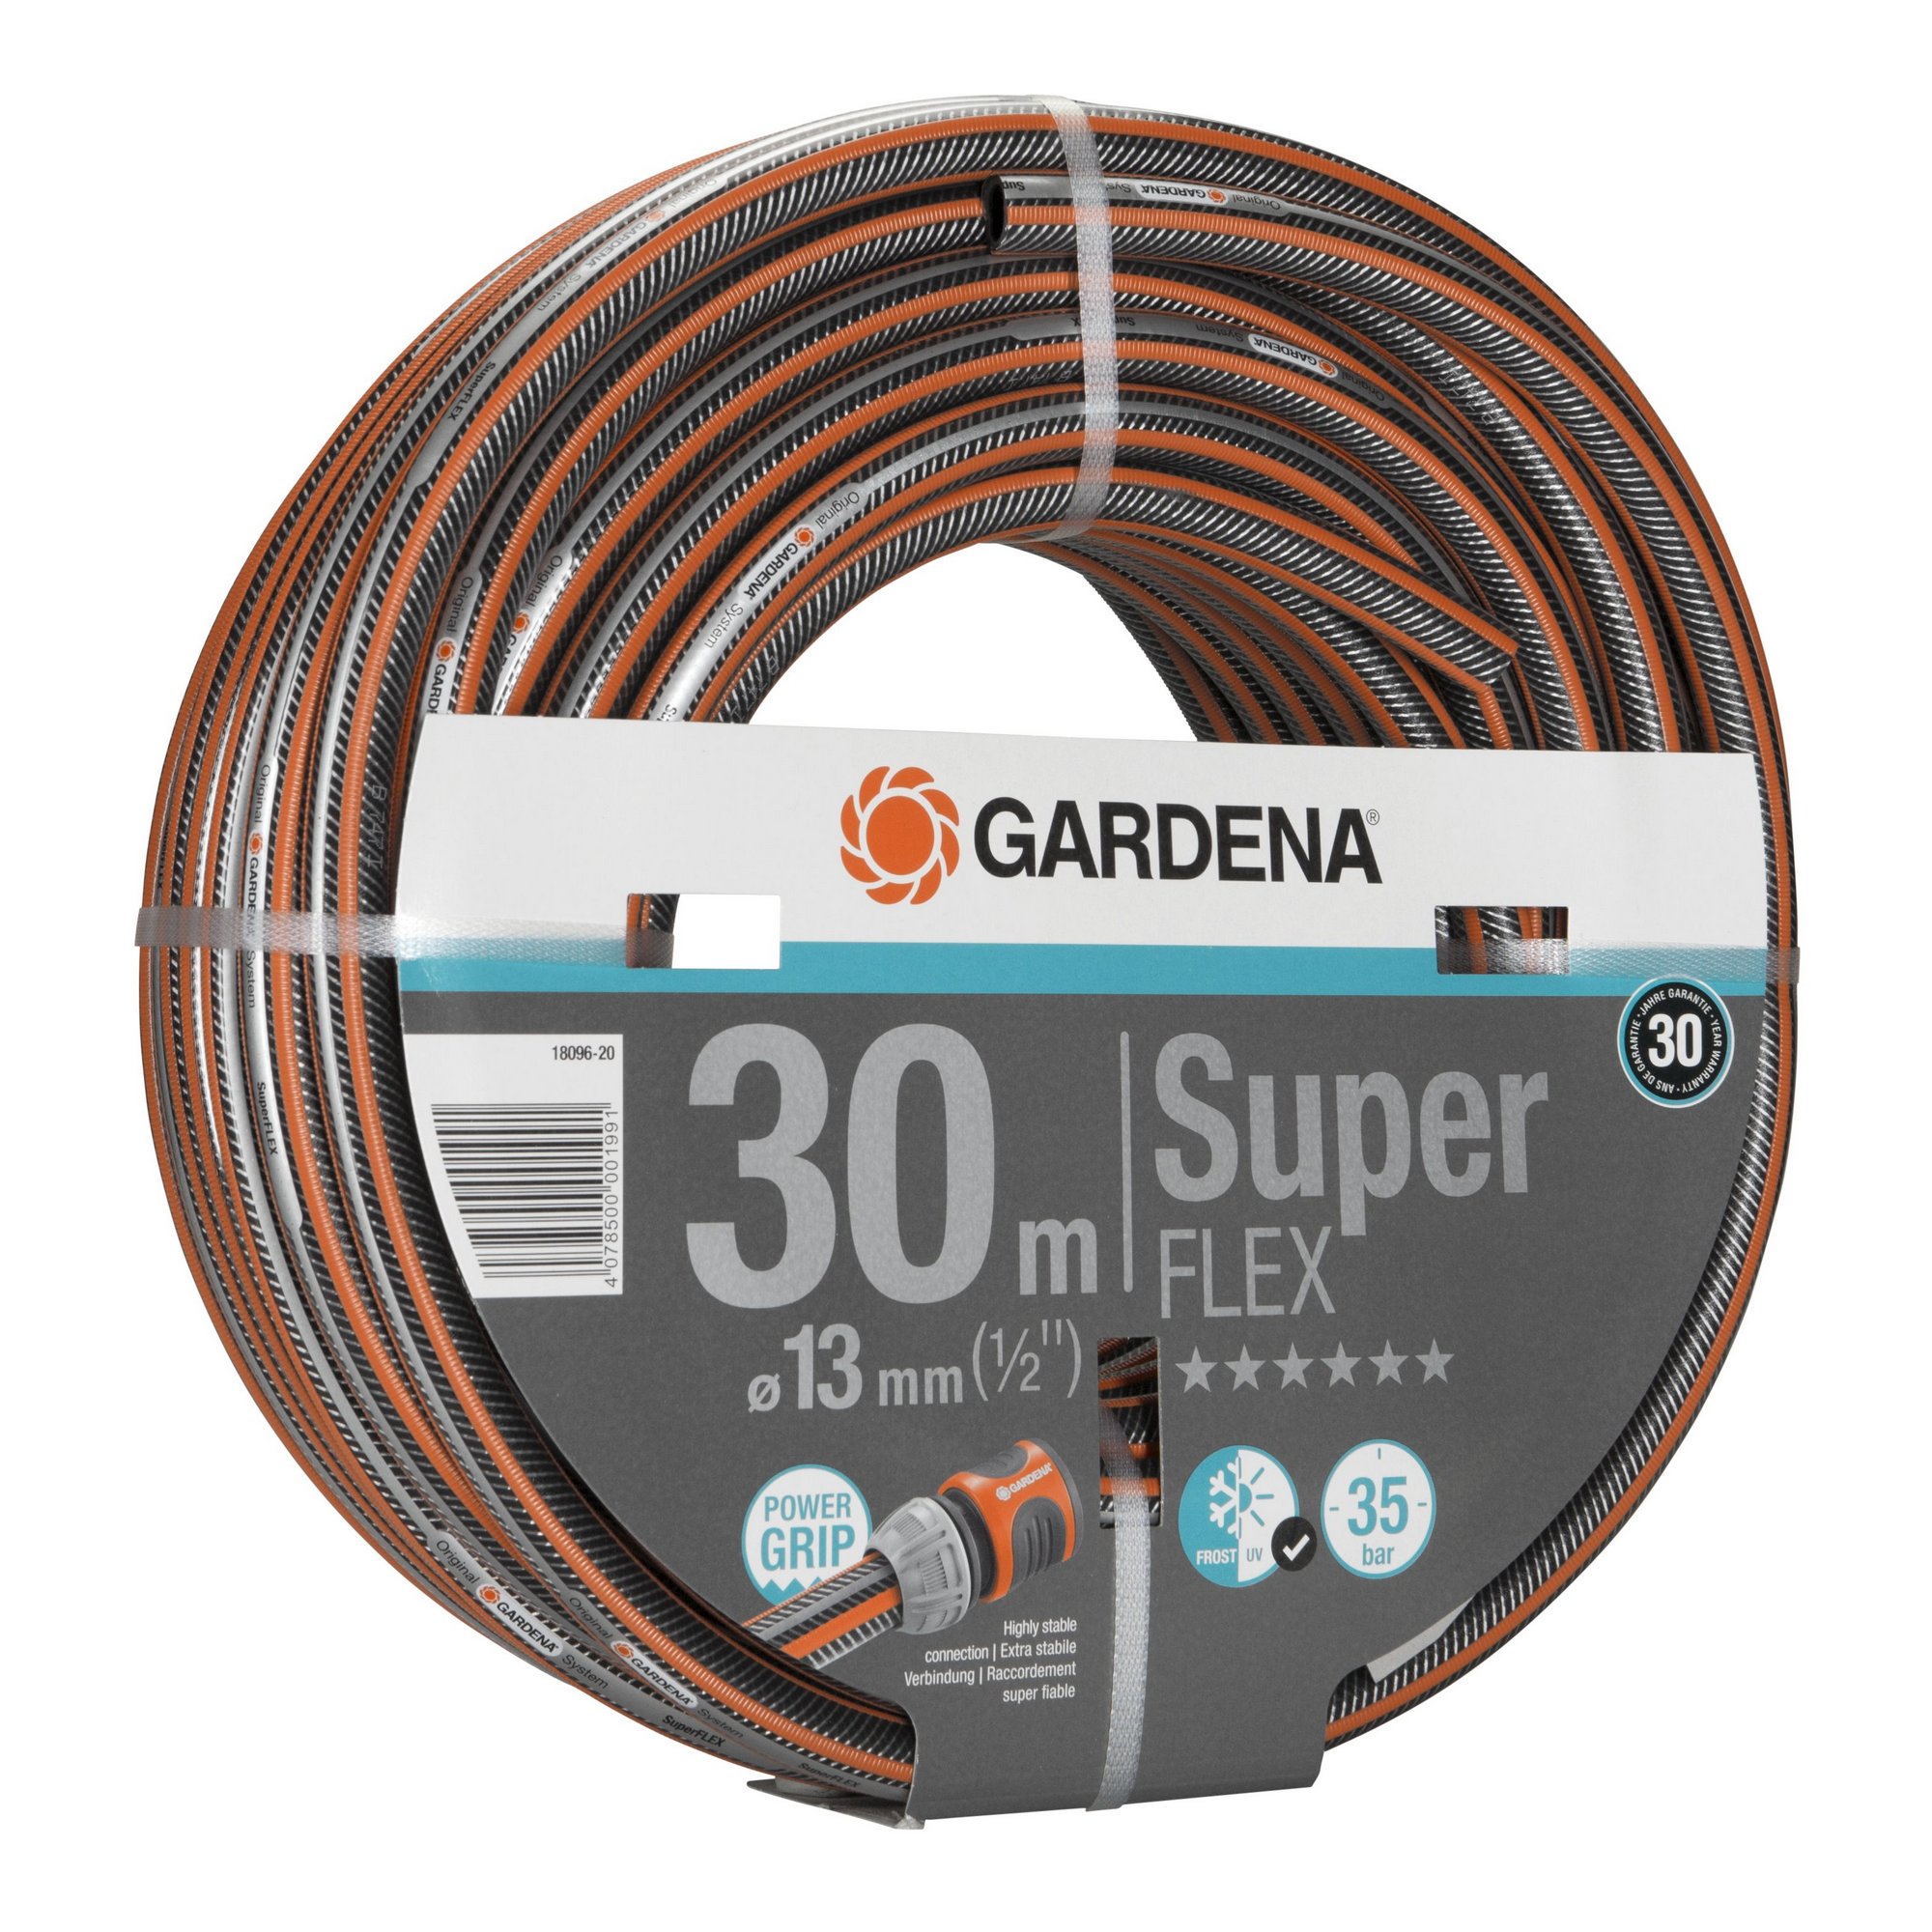 Gartenschlauch 'Premium SuperFlex' Ø 13 mm (1/2"), 30 m + product picture